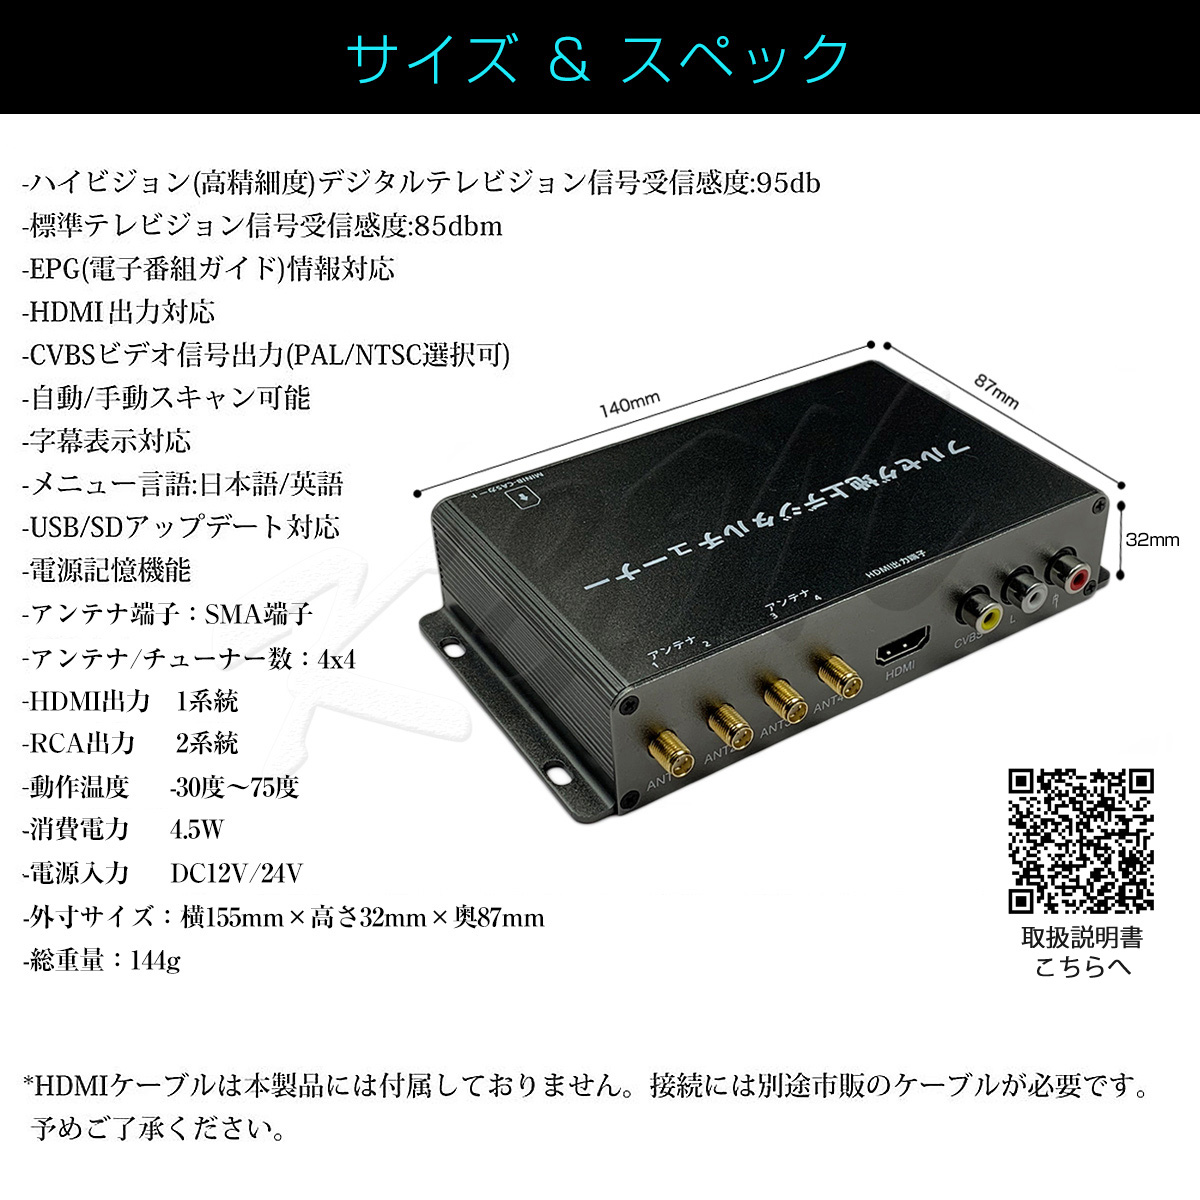 地デジチューナー フルセグ ワンセグ HDMI 4x4 高性能 4チューナー 4アンテナ 自動切換 150km/hまで受信 高画質 古い車載TVやカーナビにも使える  12V/24V フィルムアンテナ miniB-CASカード付き 宅配便送料無料 1年保証：[KMサービス]